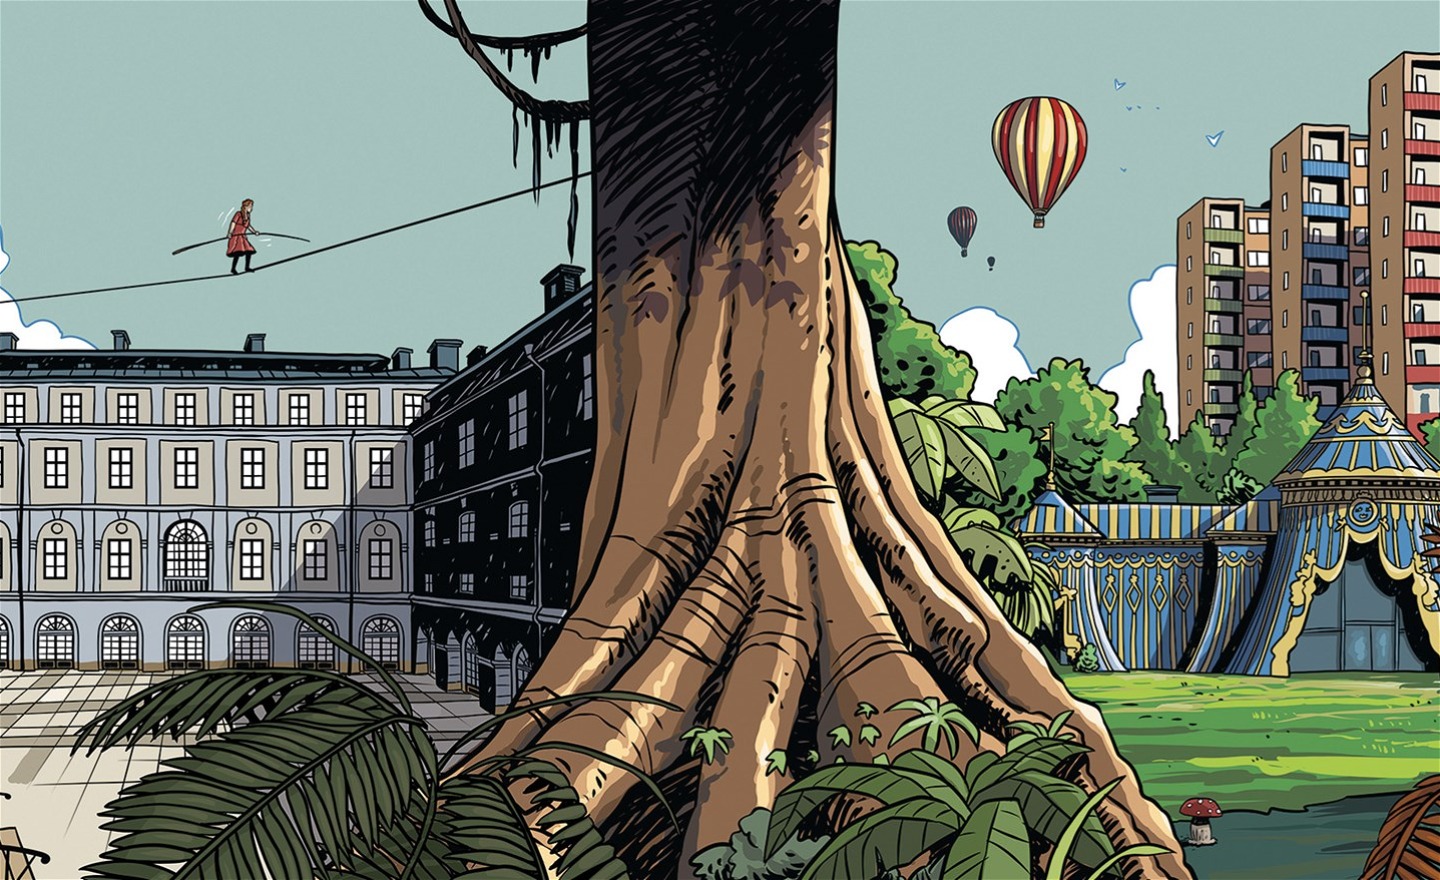 Tecknad bild i färg med en trädstam i mitten och två olika miljöer på sidorna. Till vänster en byggnad och en flicka som lindansar, till höger luftballonger, höghus och ett tält.